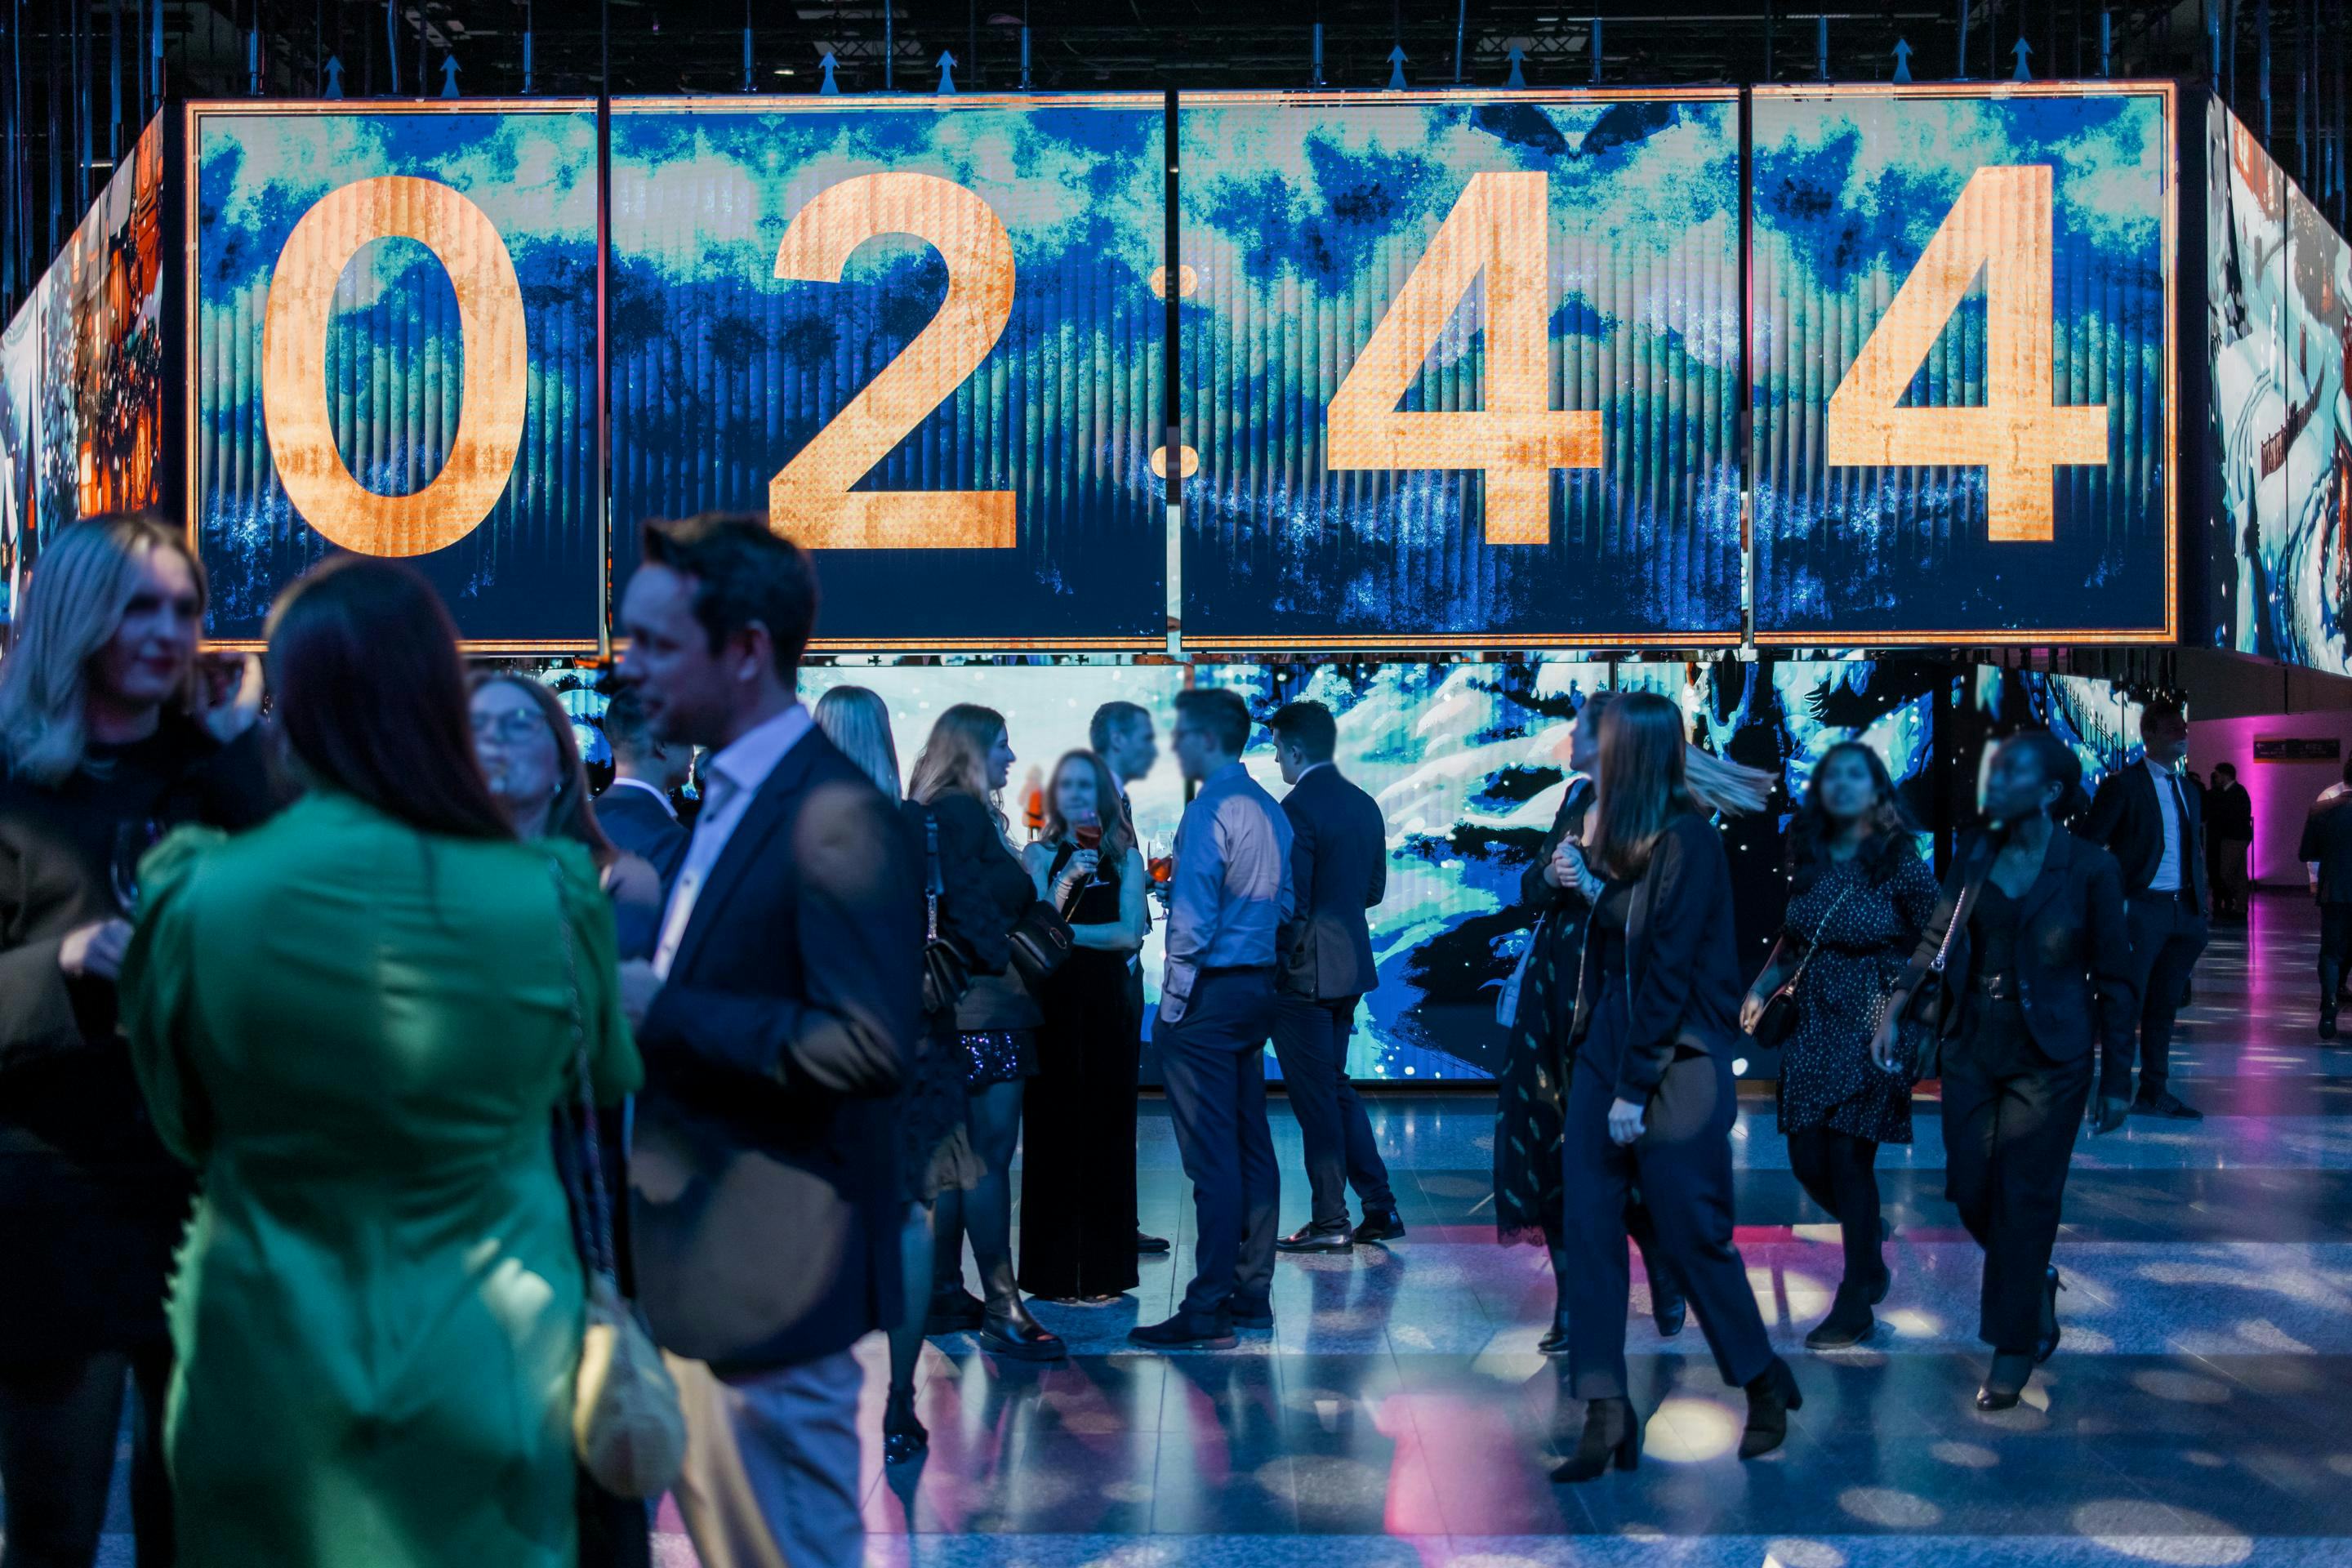 Foto: Countdown auf LED-Flaechen in einer Halle mit festlich gekleideten Menschen